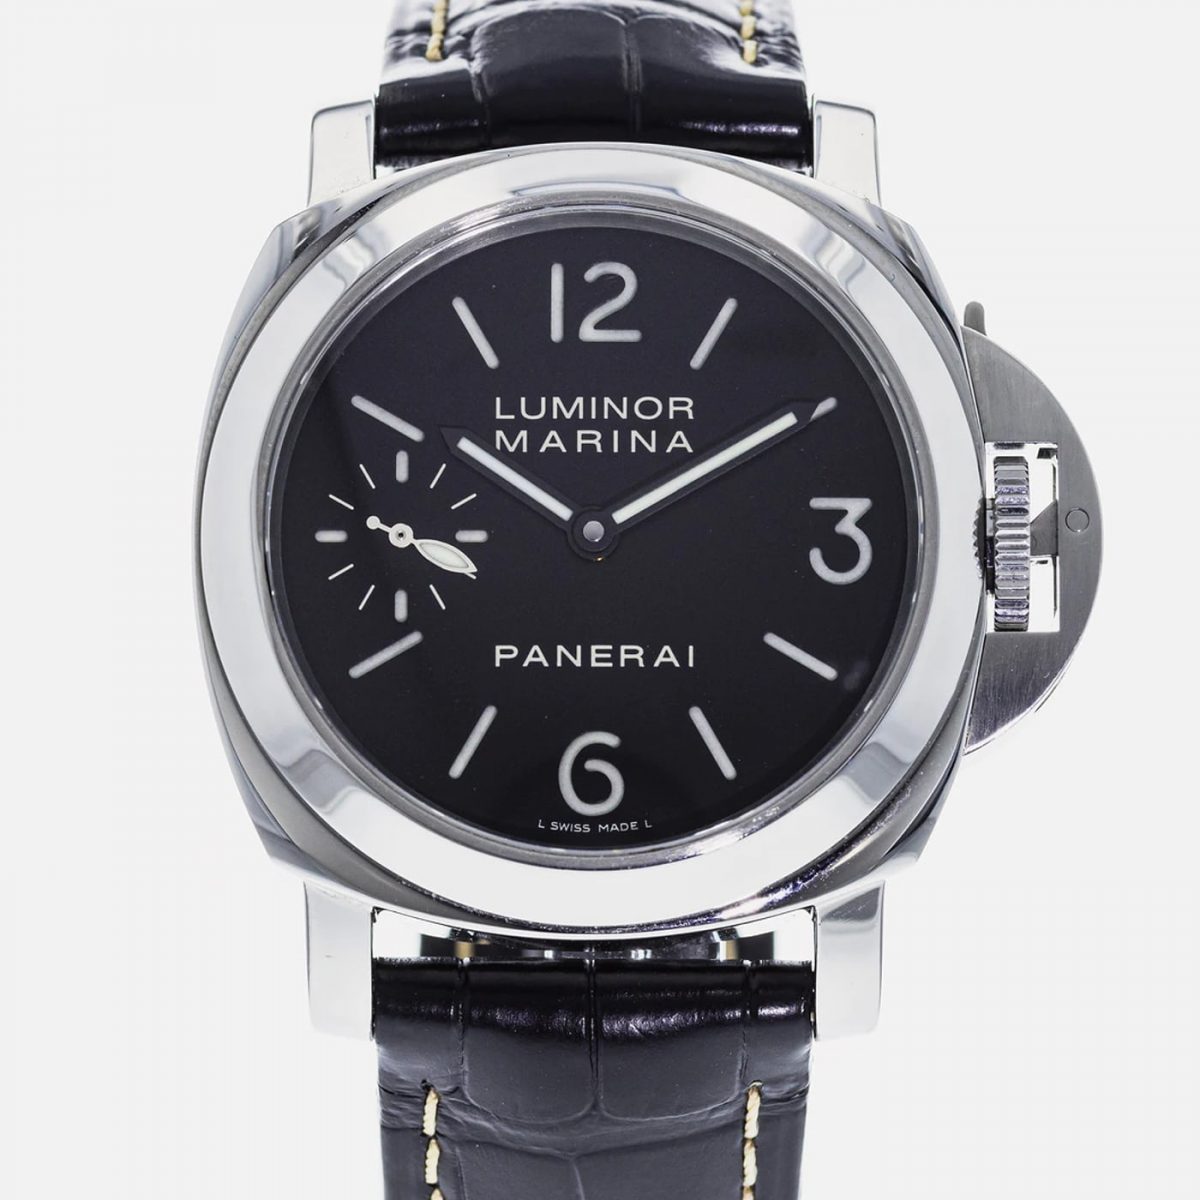 UK High Quality Replica Panerai Luminor Marina PAM 111 Watches